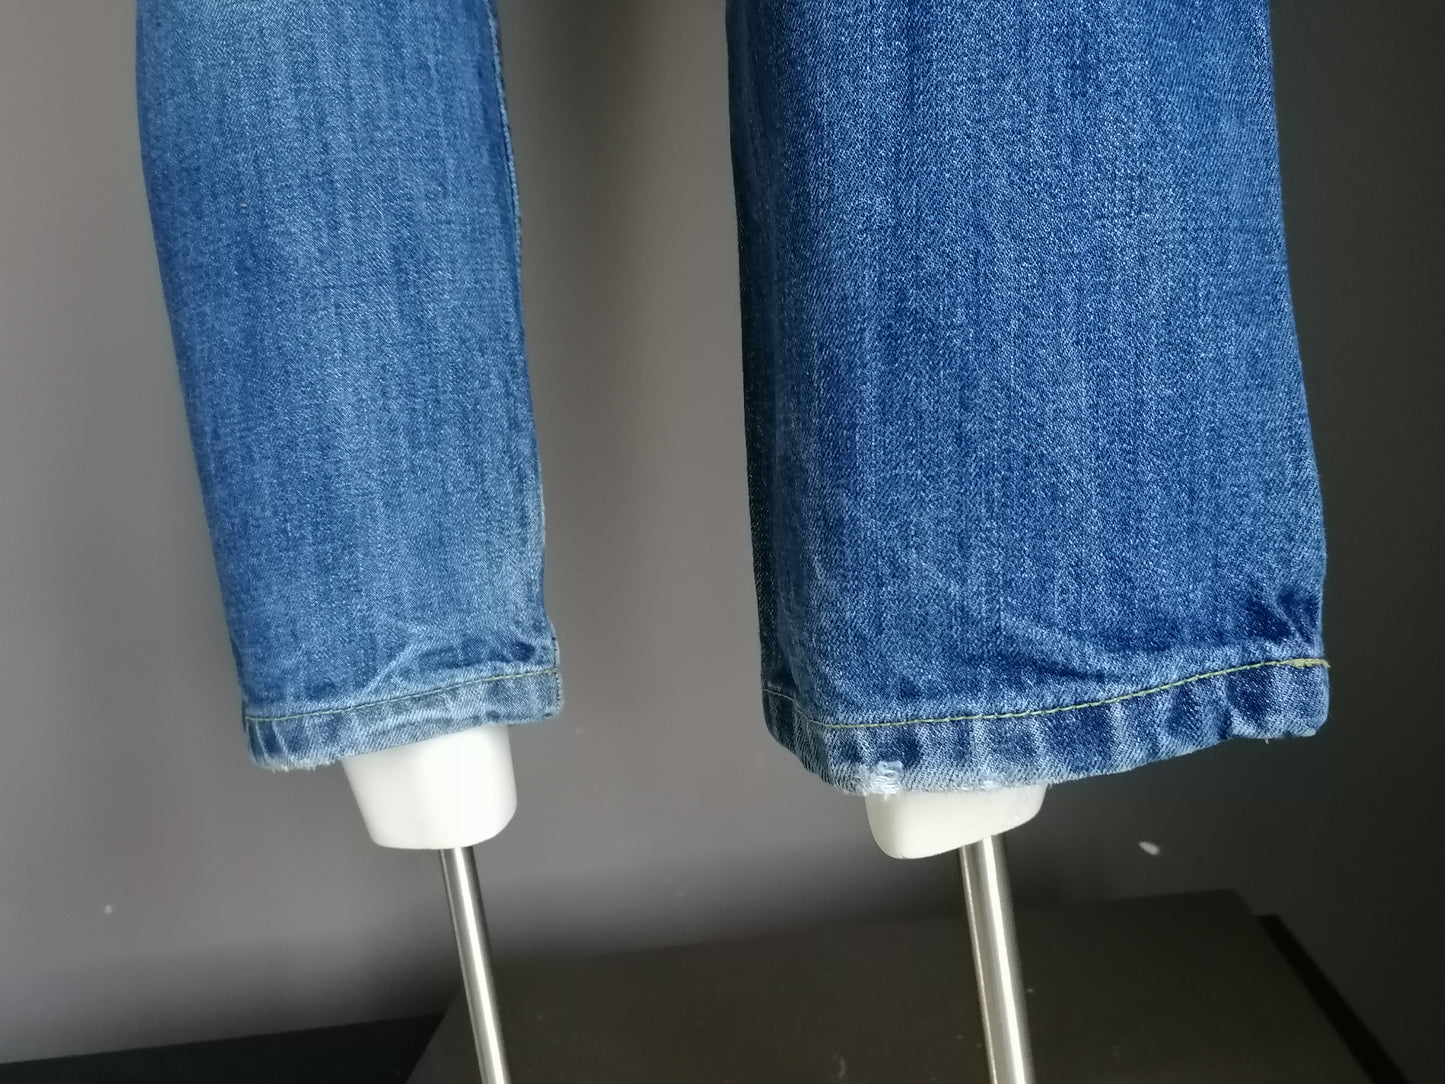 Neue Look Jeans. Blau gefärbt. Größe W30 - L30. Gerade geschnitten.